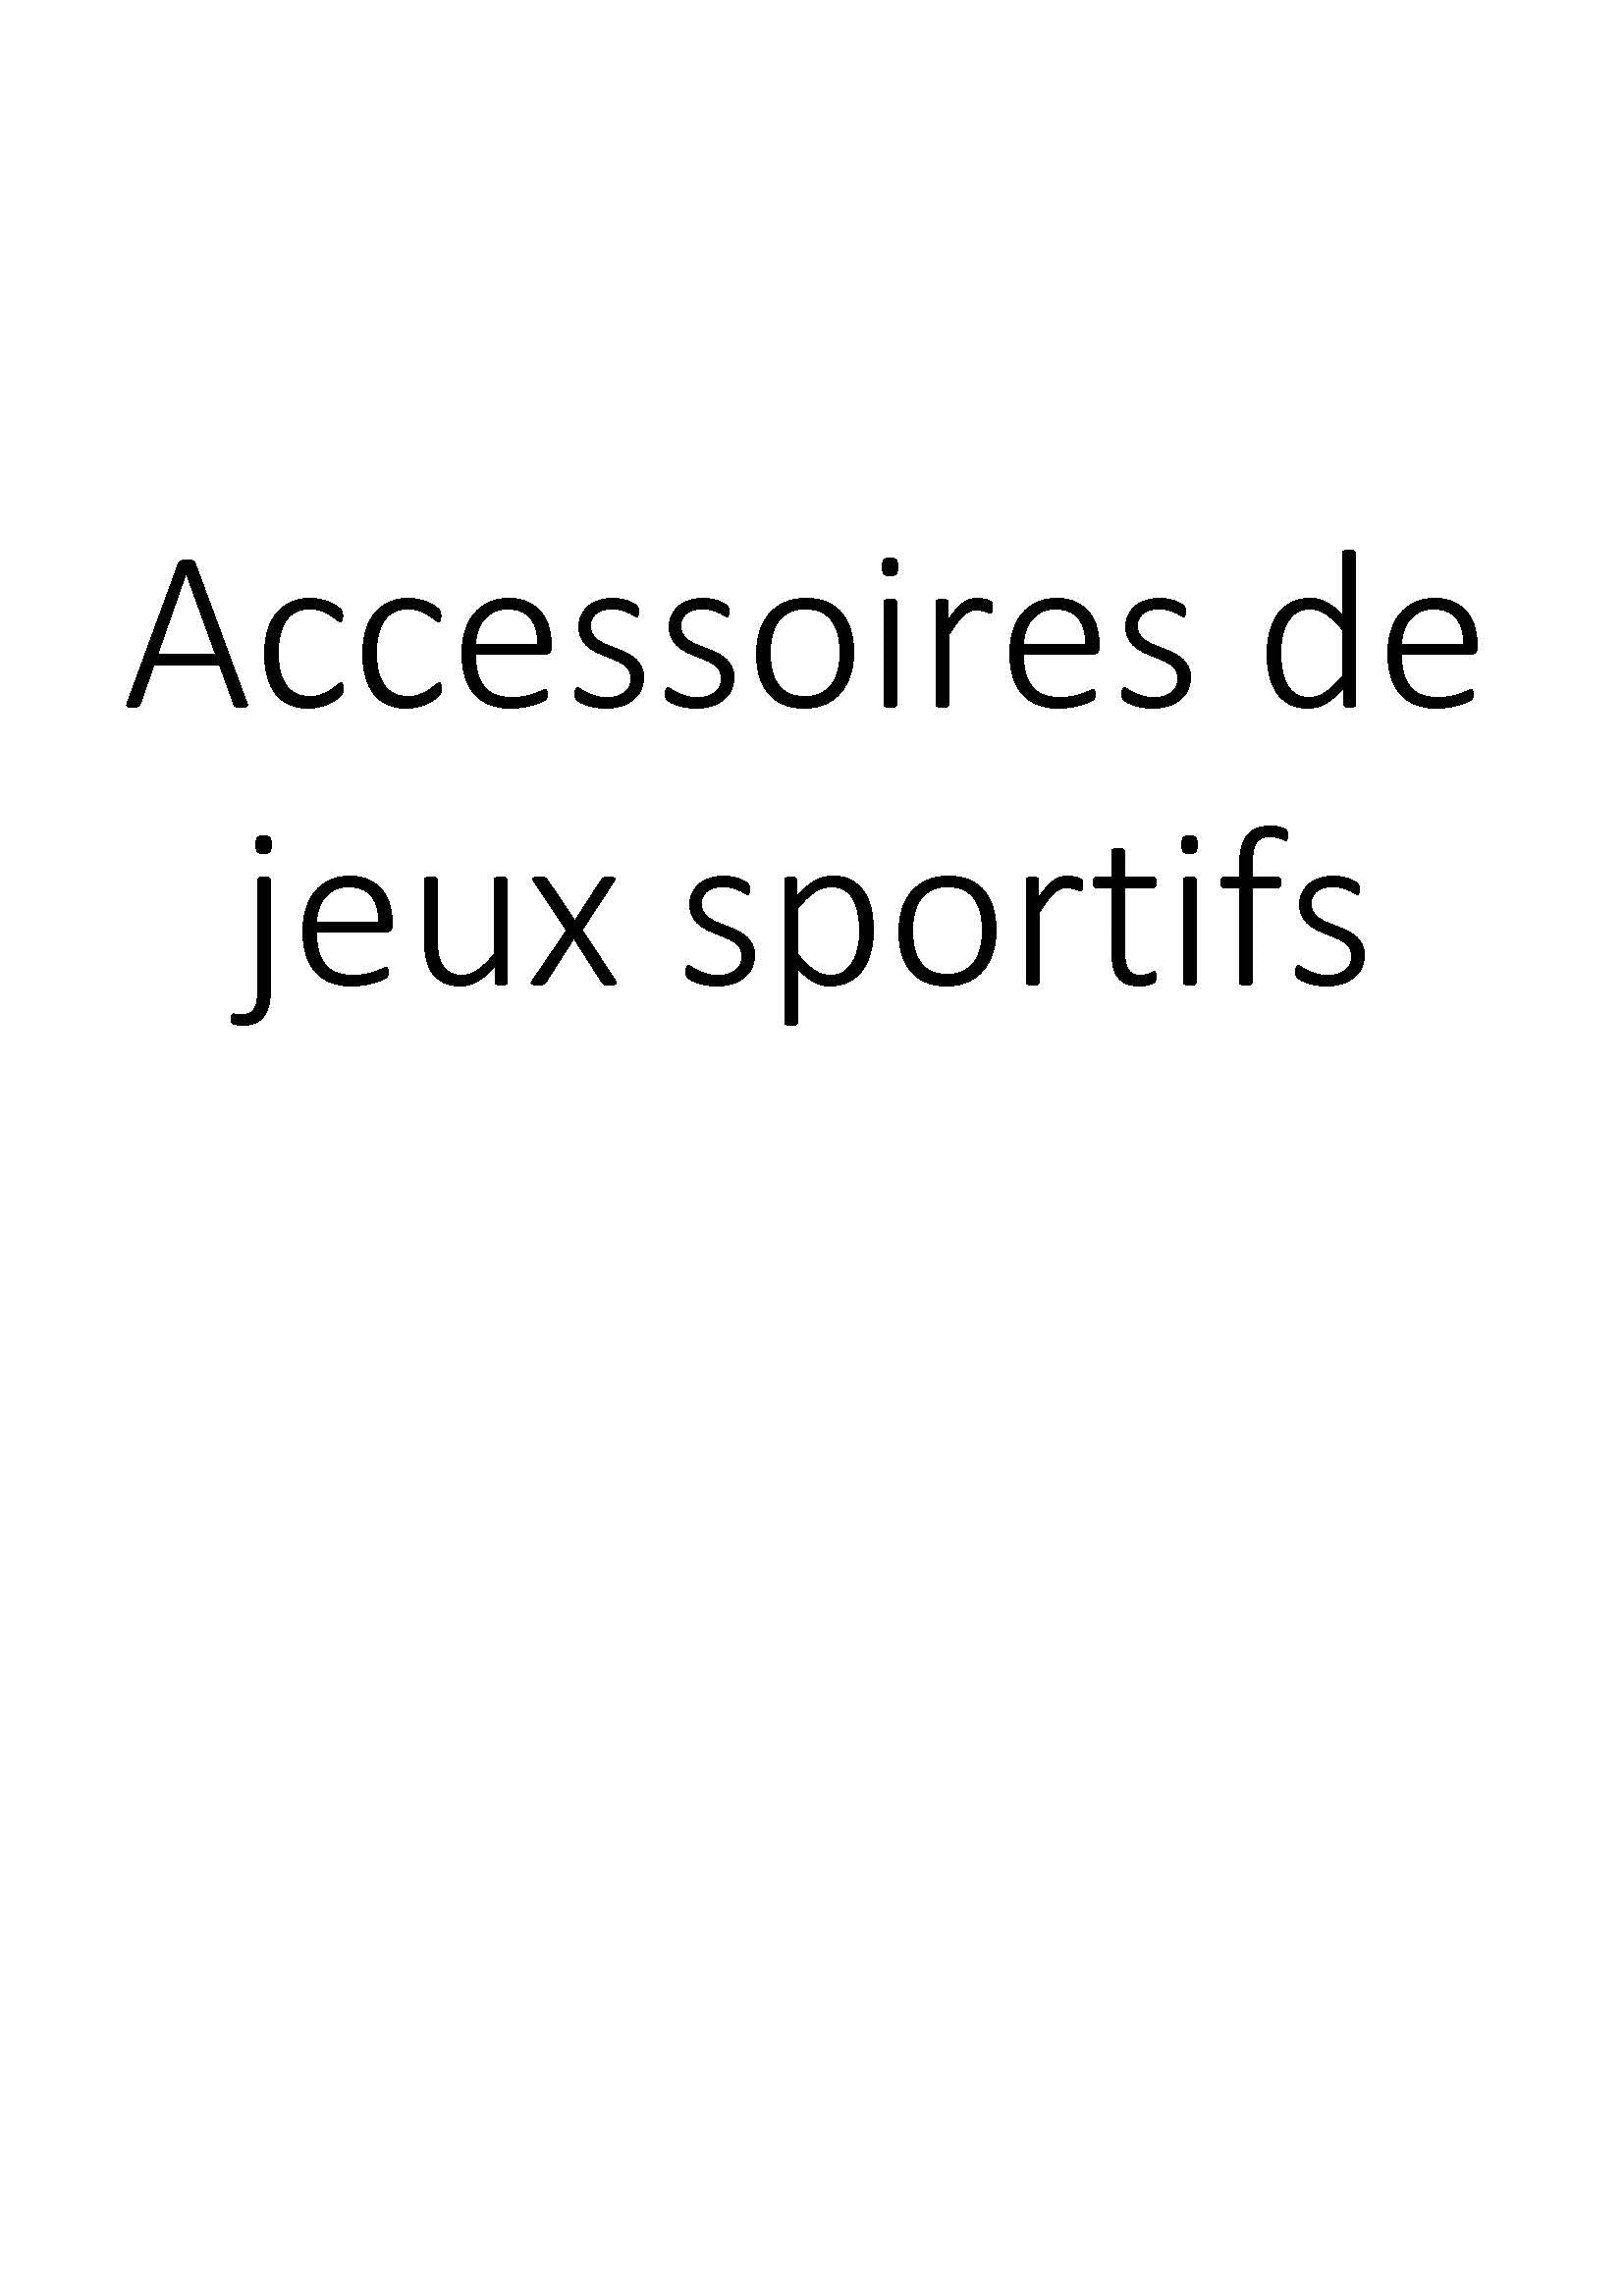 Accessoires de jeux sportifs clicktofournisseur.com